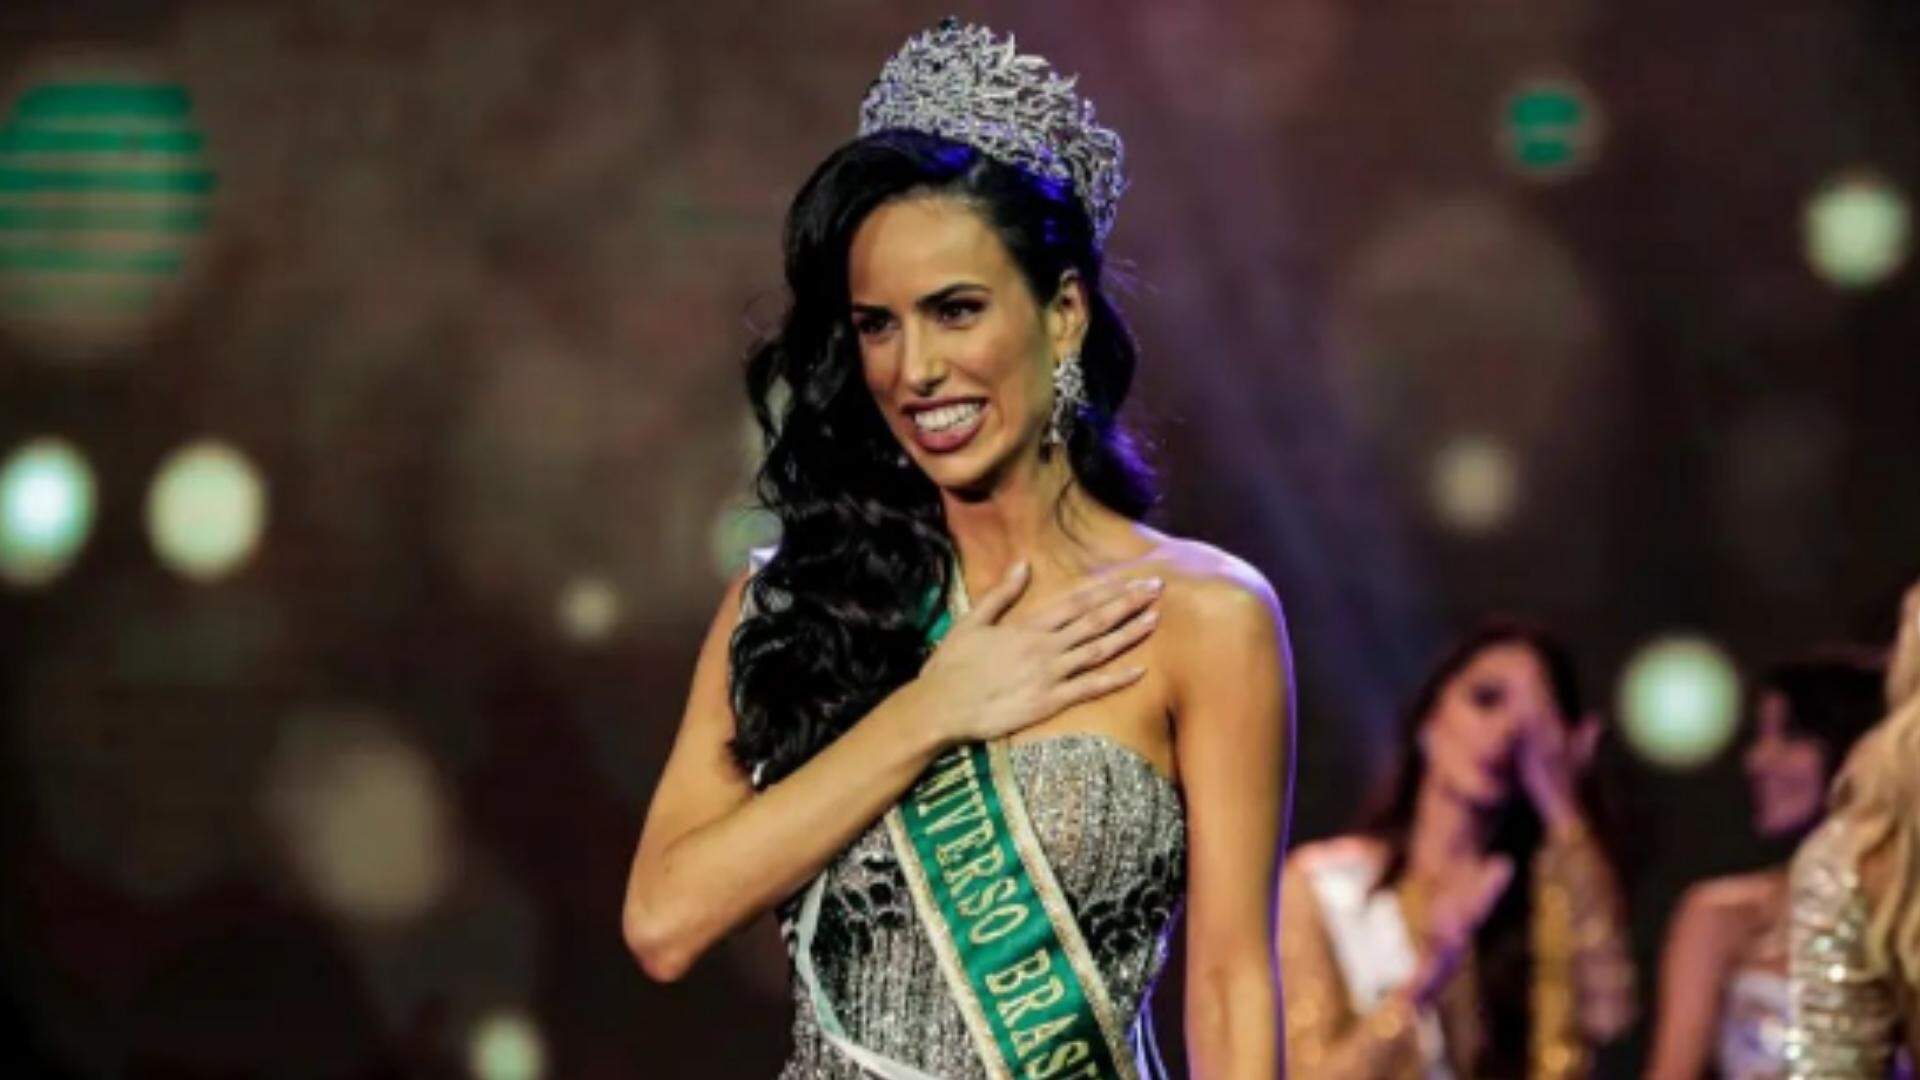 Mia Mamede, Miss Universo Brasil 2022 faz transformação radical no visual - Metropolitana FM